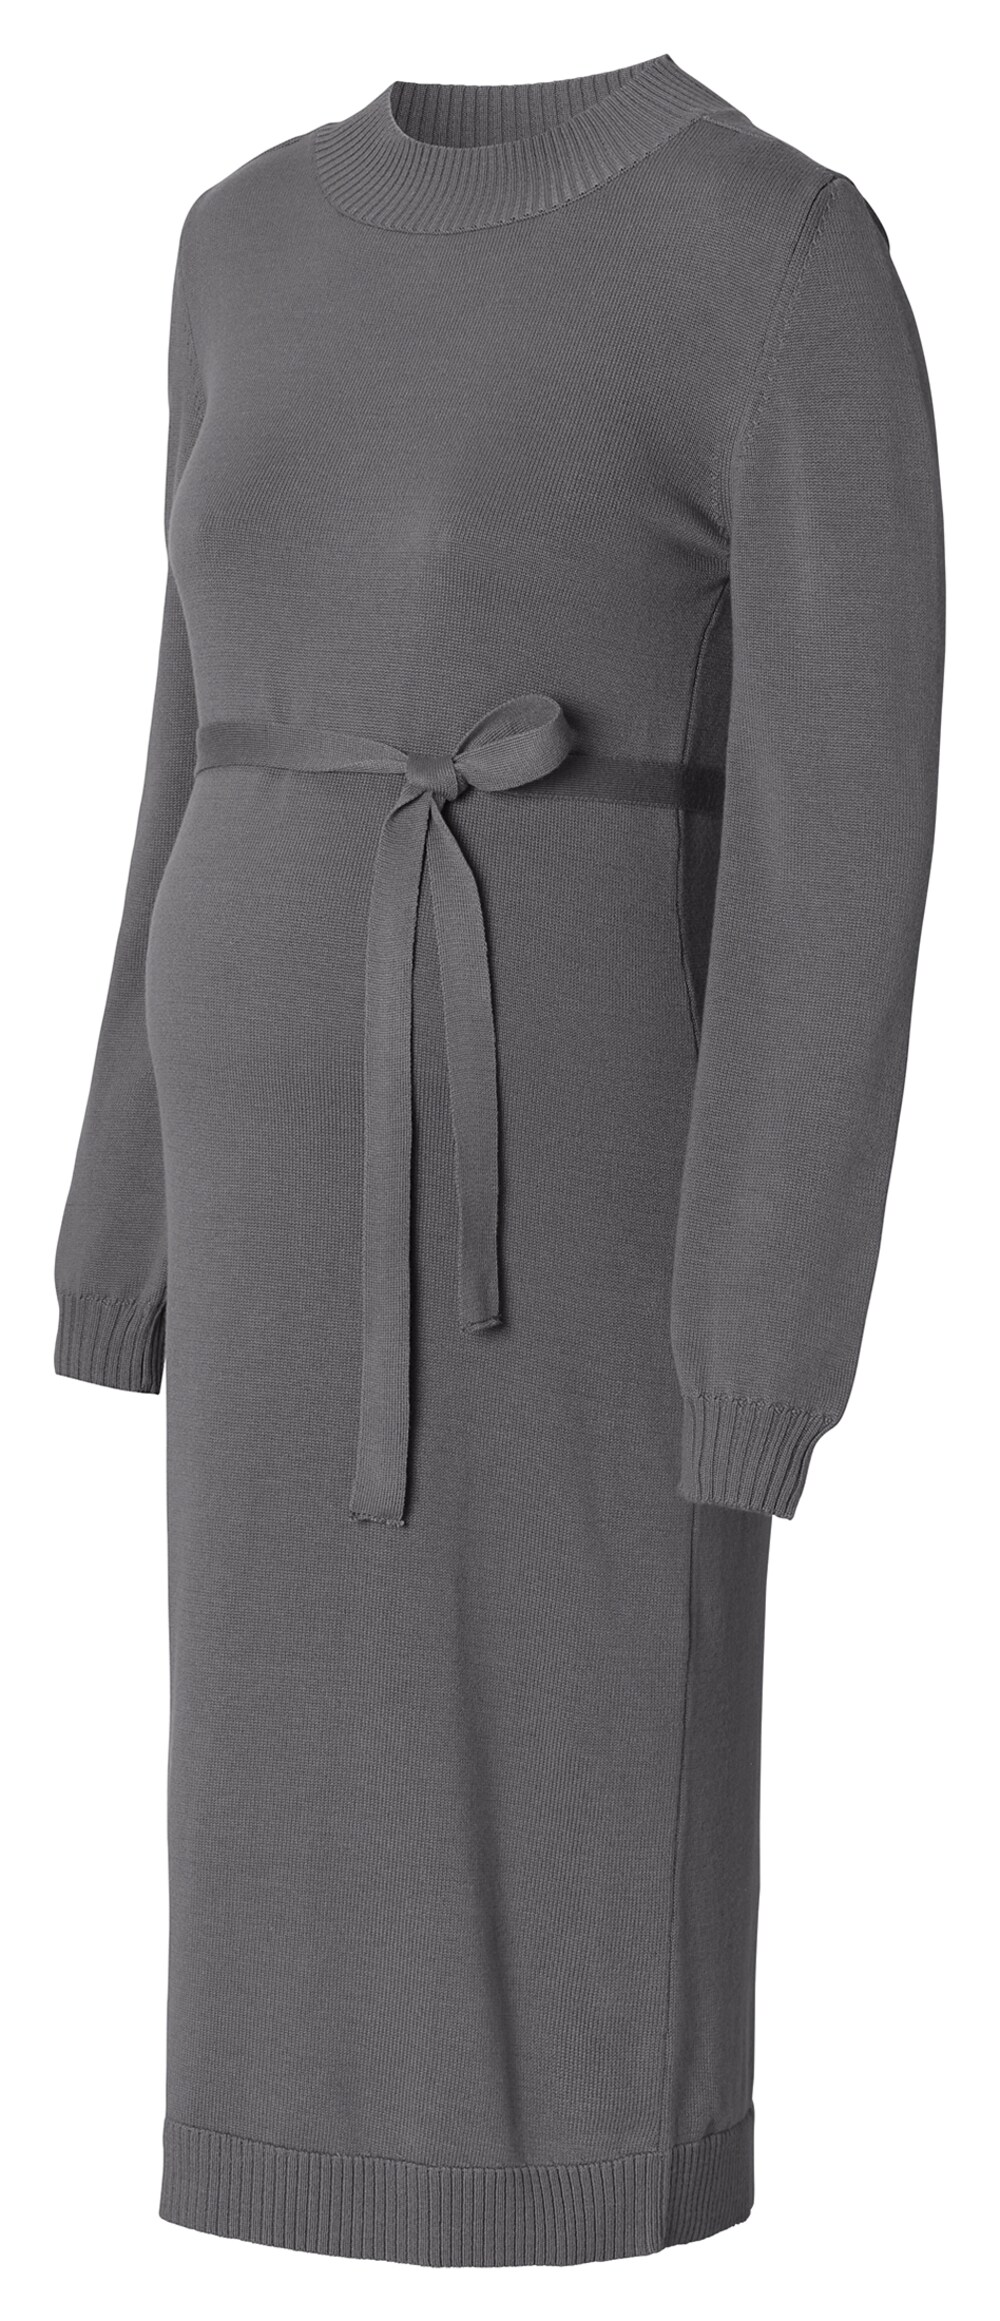 Вязанное платье Esprit, базальтовый серый вязанное платье esprit карамель